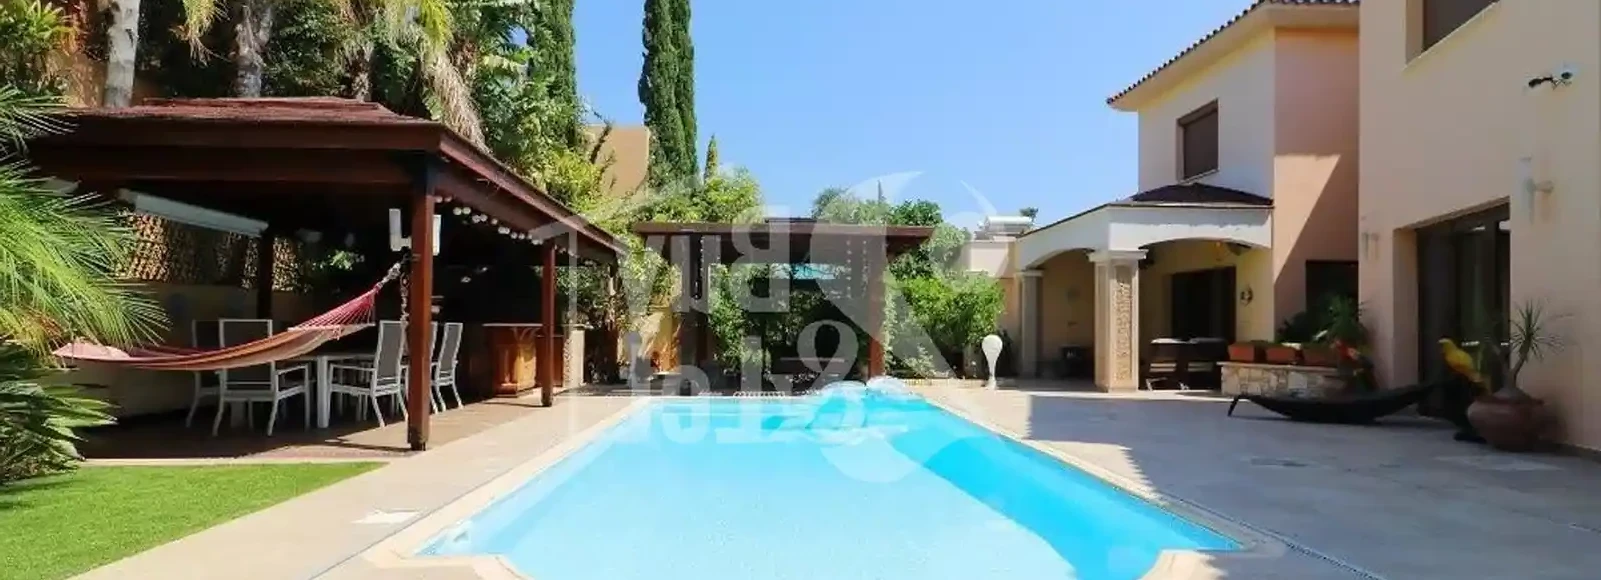 5-bedroom villa to rent €11.000, image 1